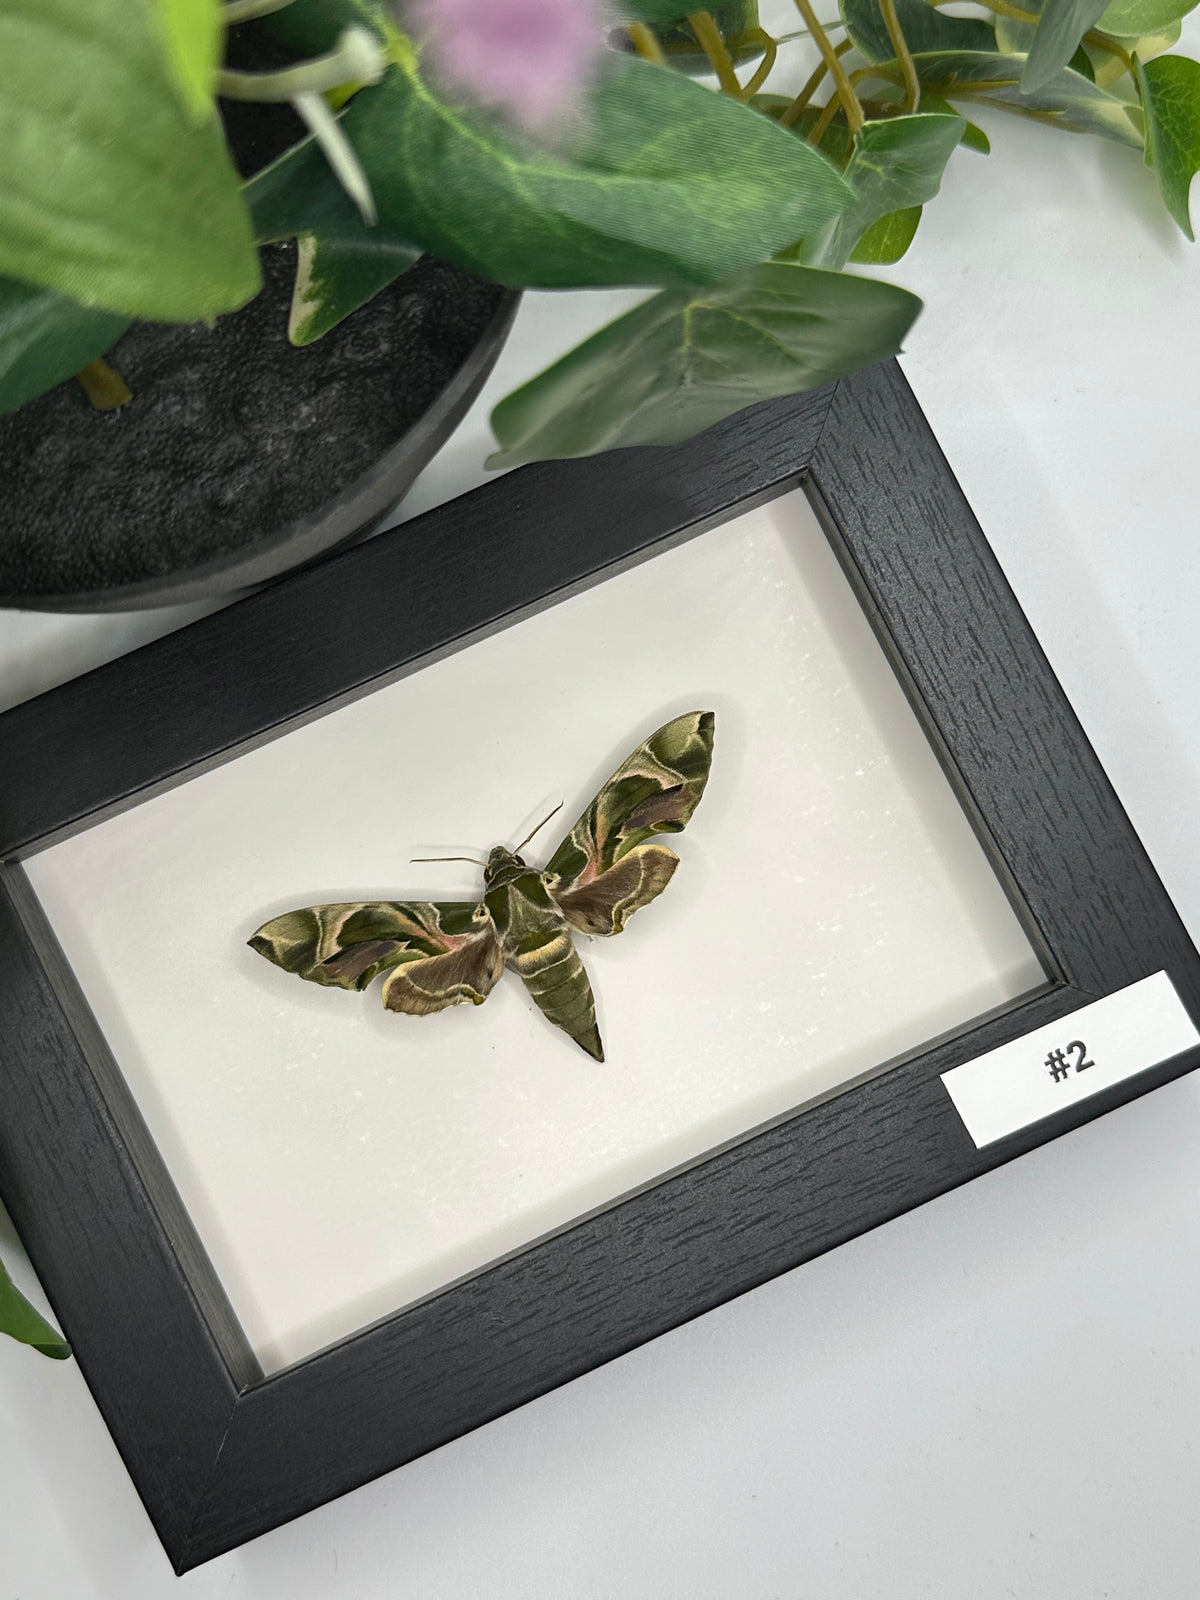 Oleander Hawk-moth / Daphnis Nerii in a frame